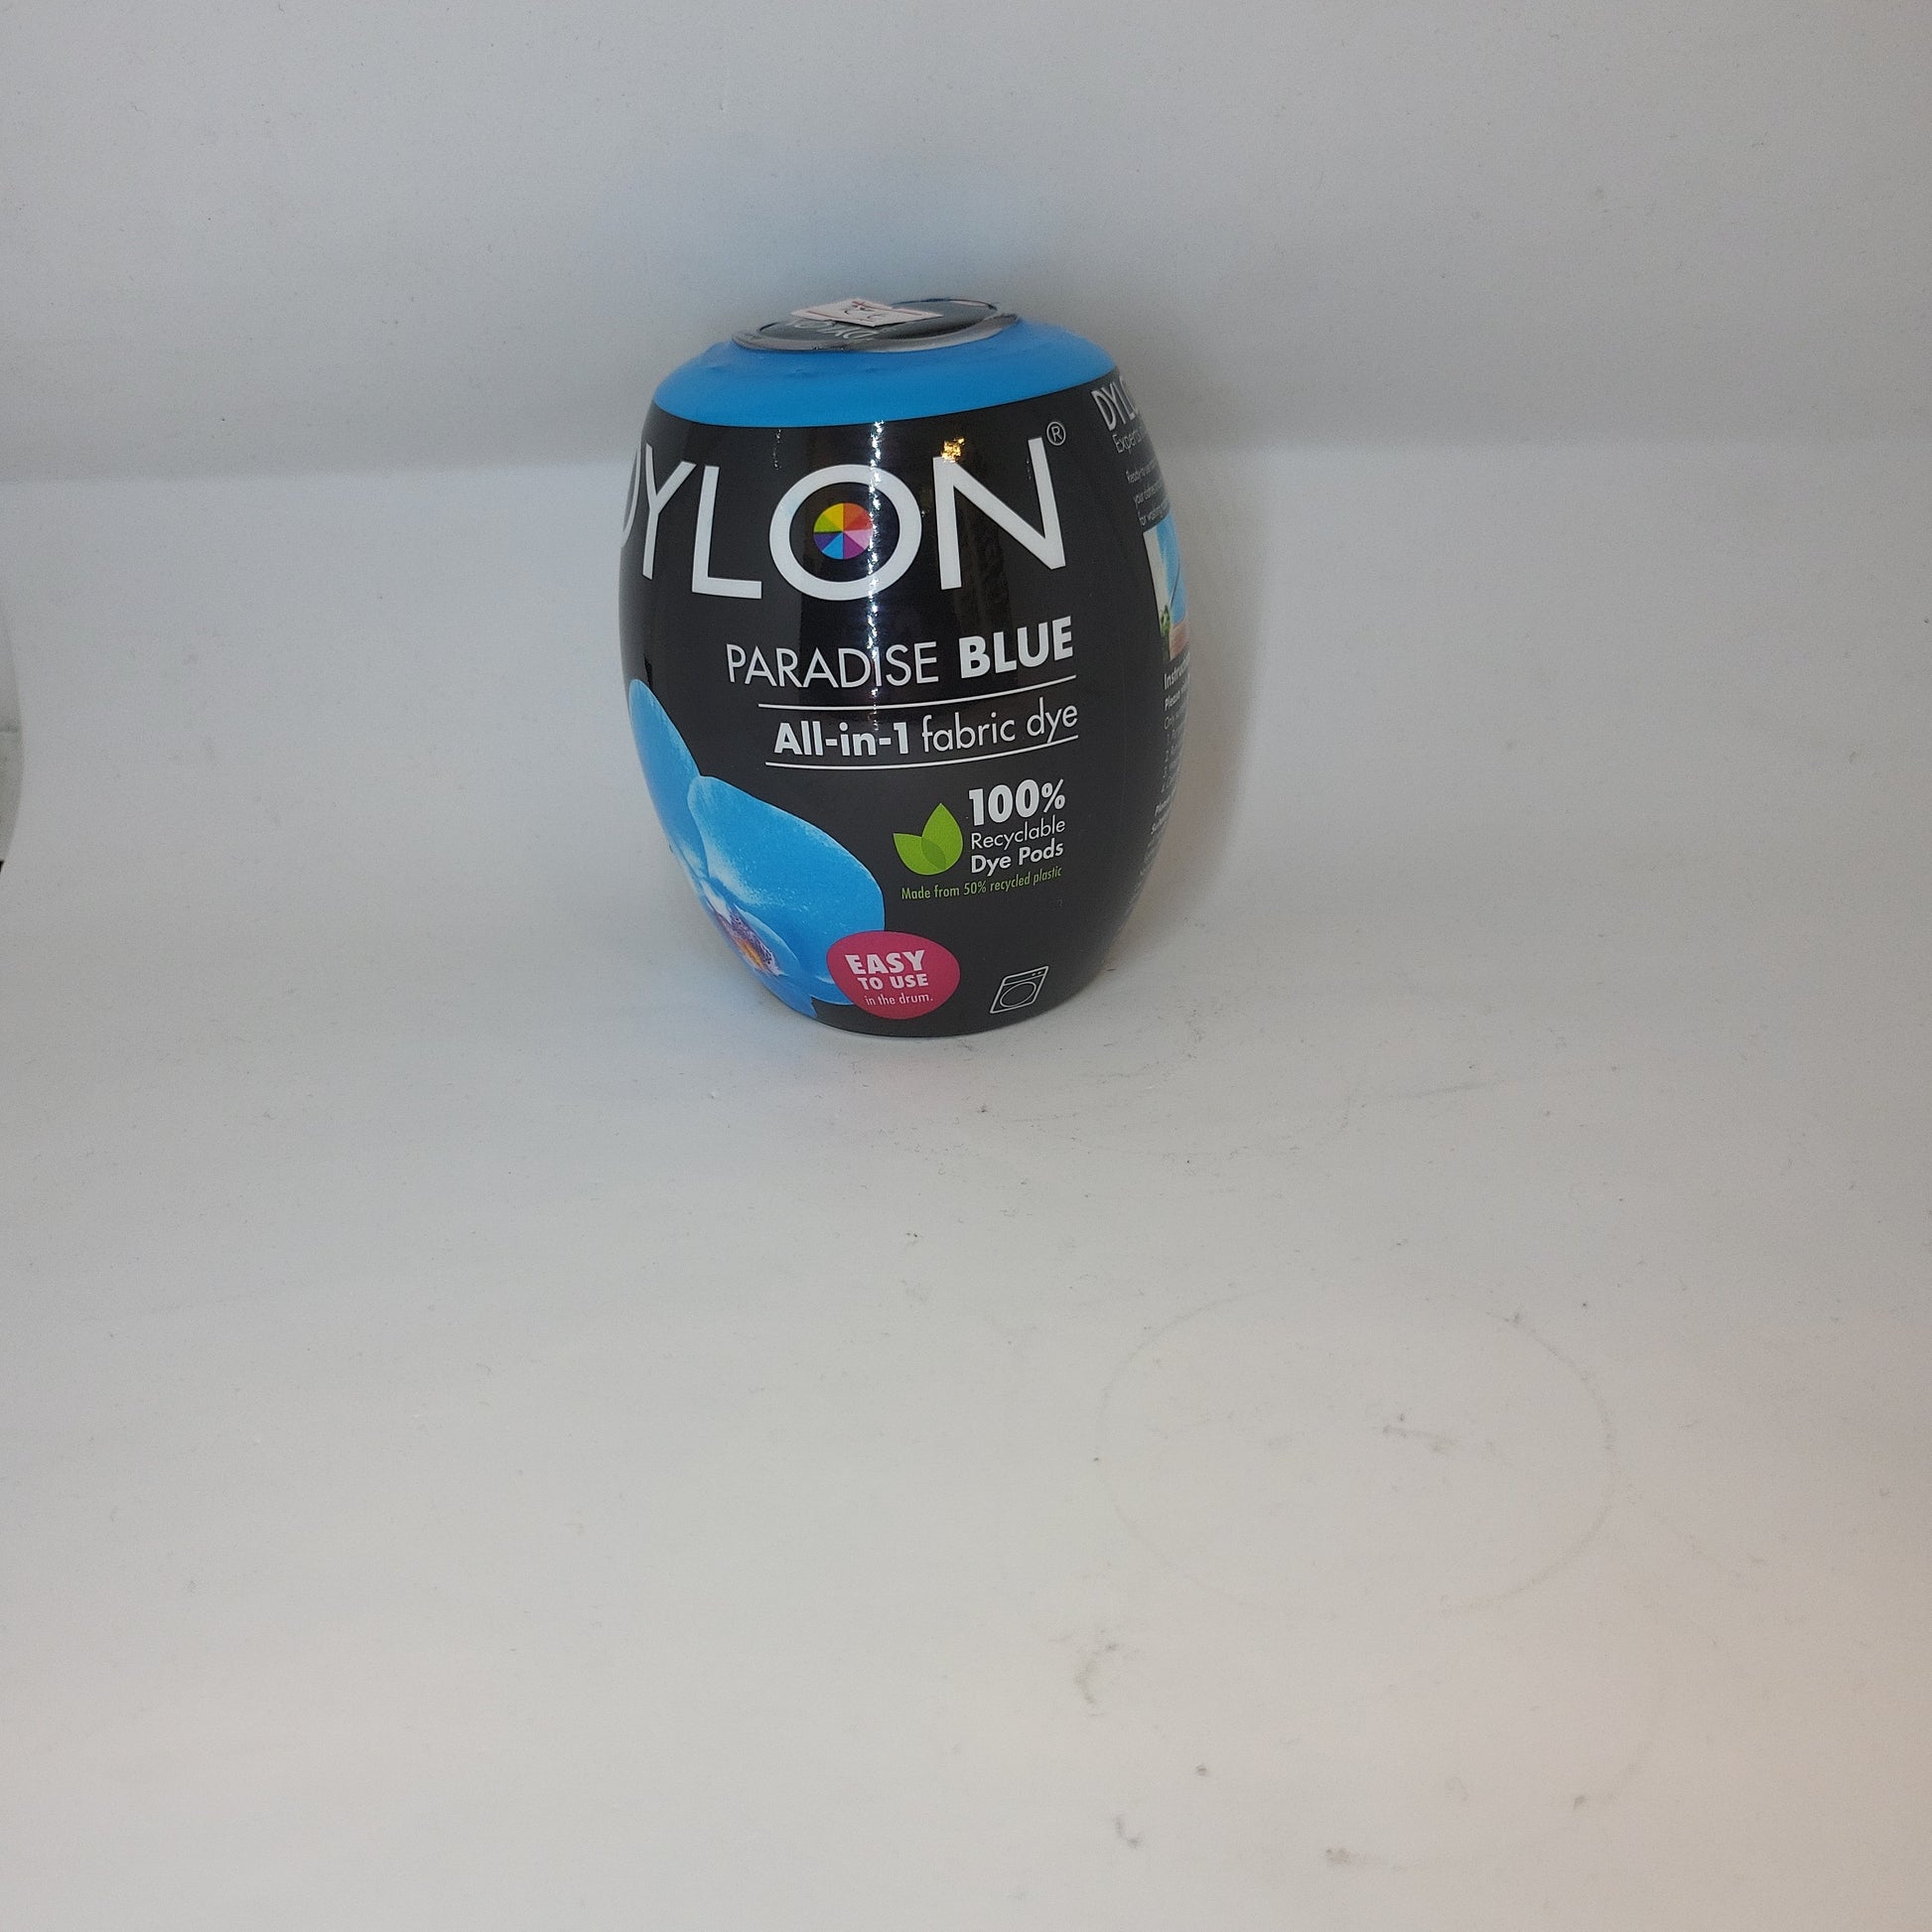 Dylon All-in-1 Washing Machine Fabric Dye Pod